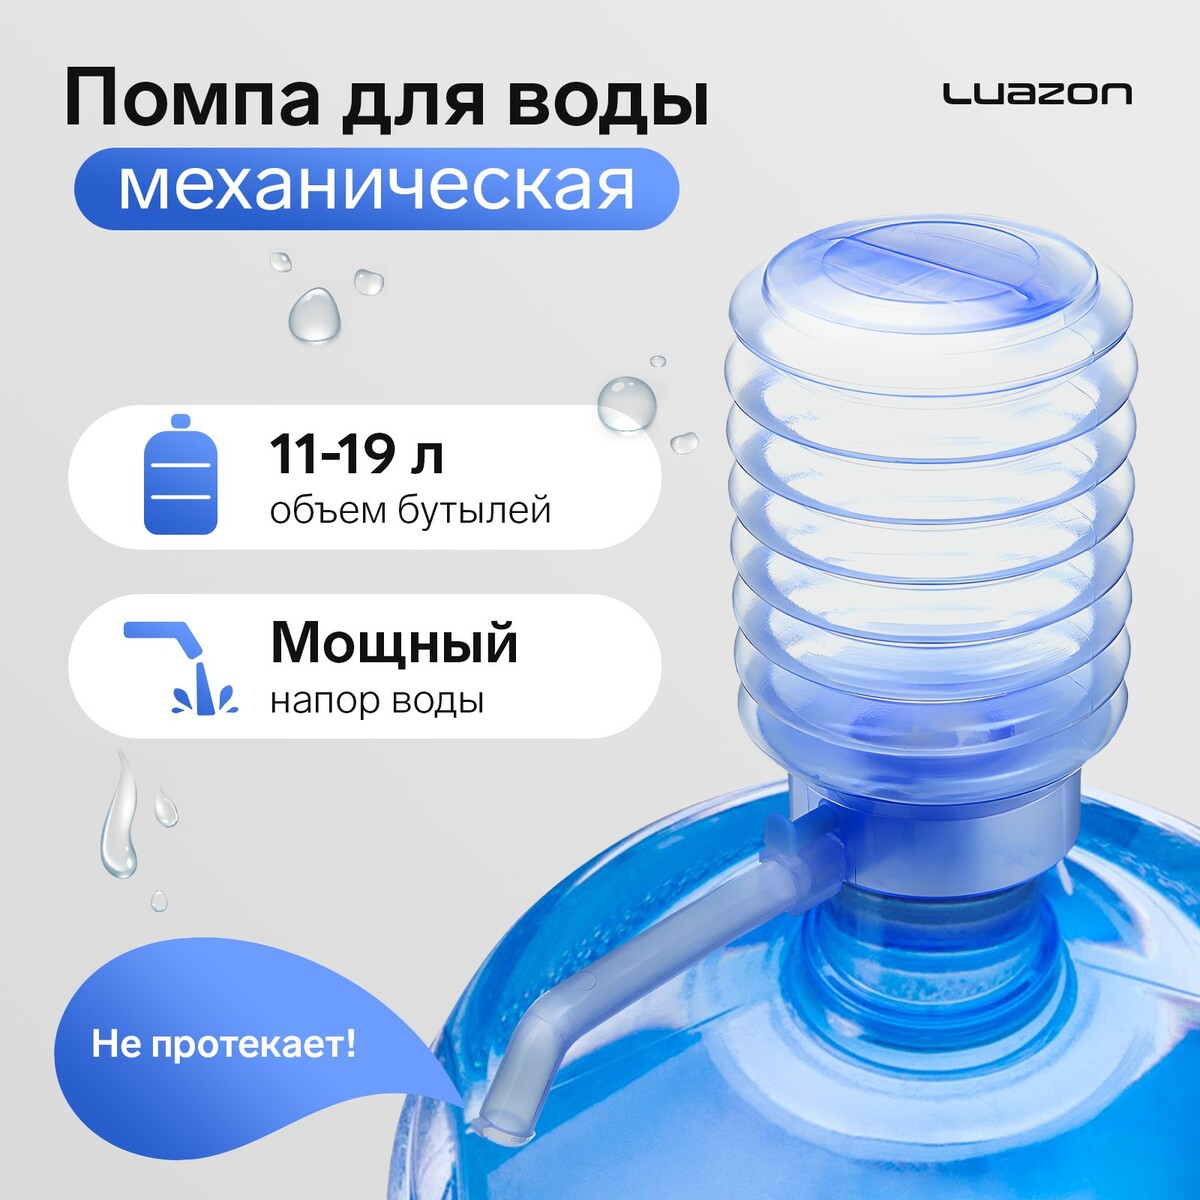 Помпа для воды luazon, механическая, прозрачная, под бутыль от 11 до 19 л, голубая помпа механическая для бутилированной воды masterprof 130916